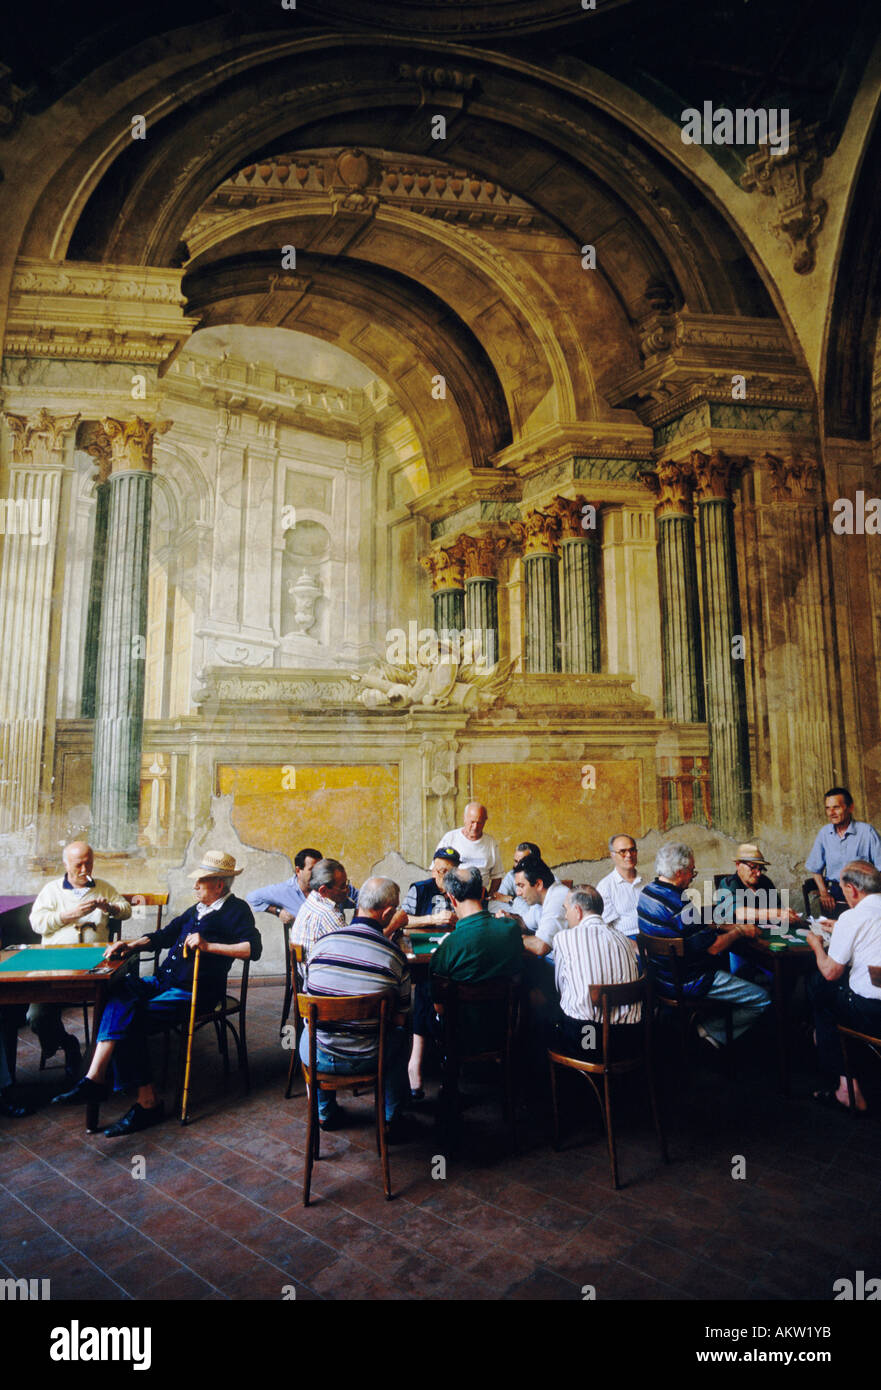 Sorrente. Italie. Un groupe d'hommes italiens se réunissent pour jouer à des cartes sur fond de fresques en fading dans la Sedil Dominova. Banque D'Images